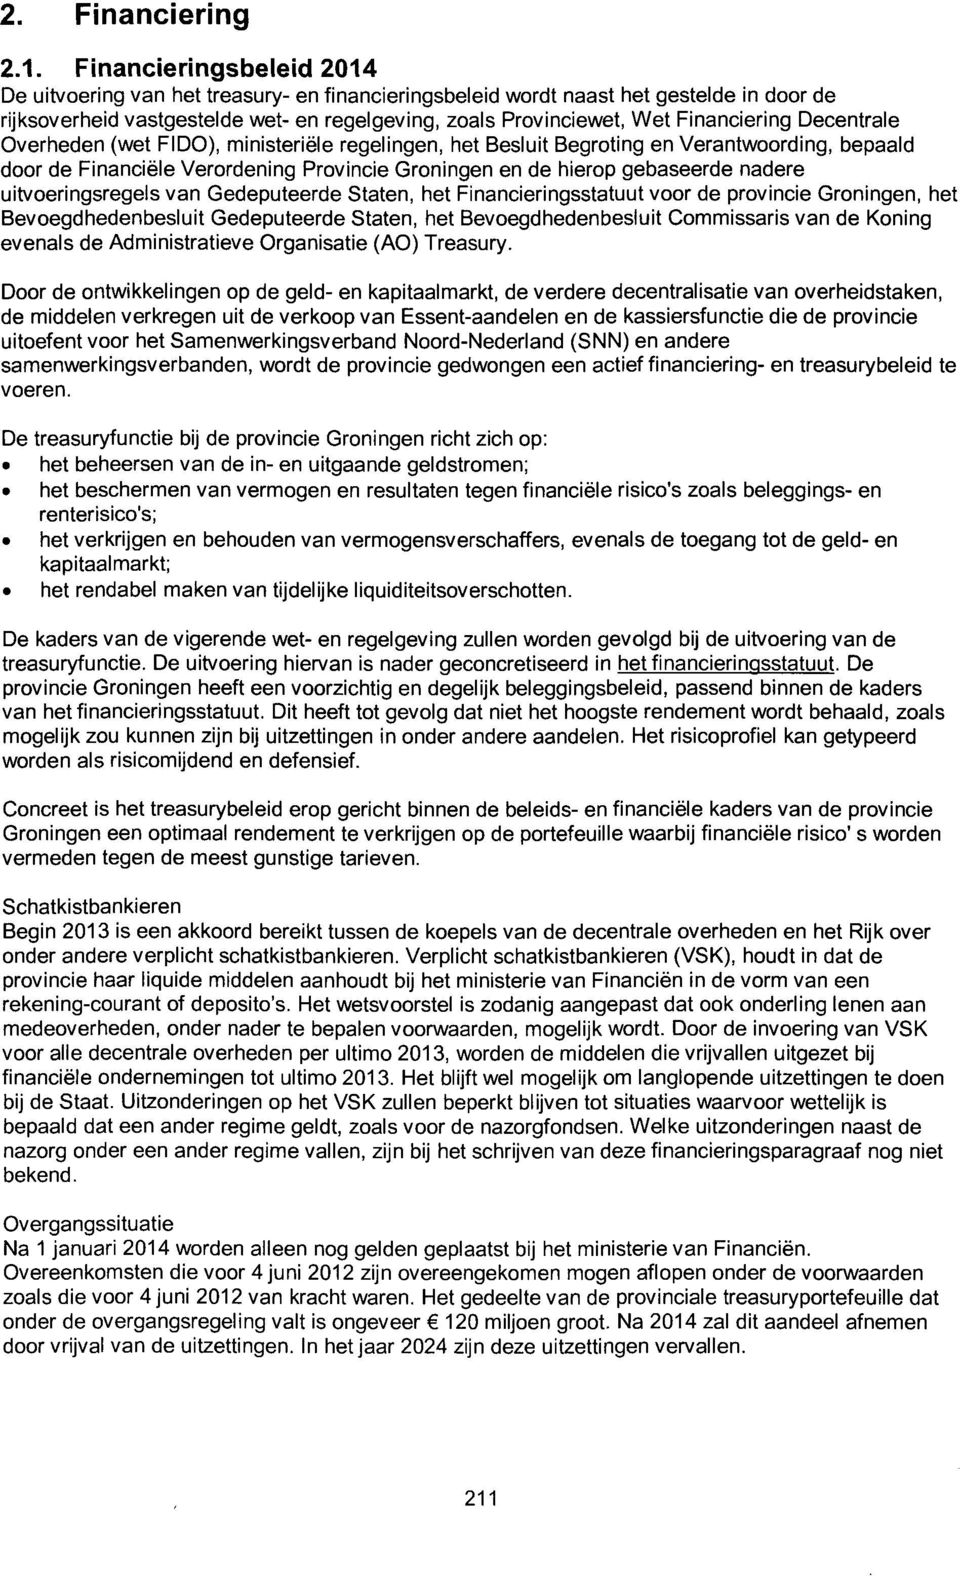 Financiering Decentrale Overheden (wet FIDO), ministeriële regelingen, het Besluit Begroting en Verantwoording, bepaald door de Financiële Verordening Provincie Groningen en de hierop gebaseerde